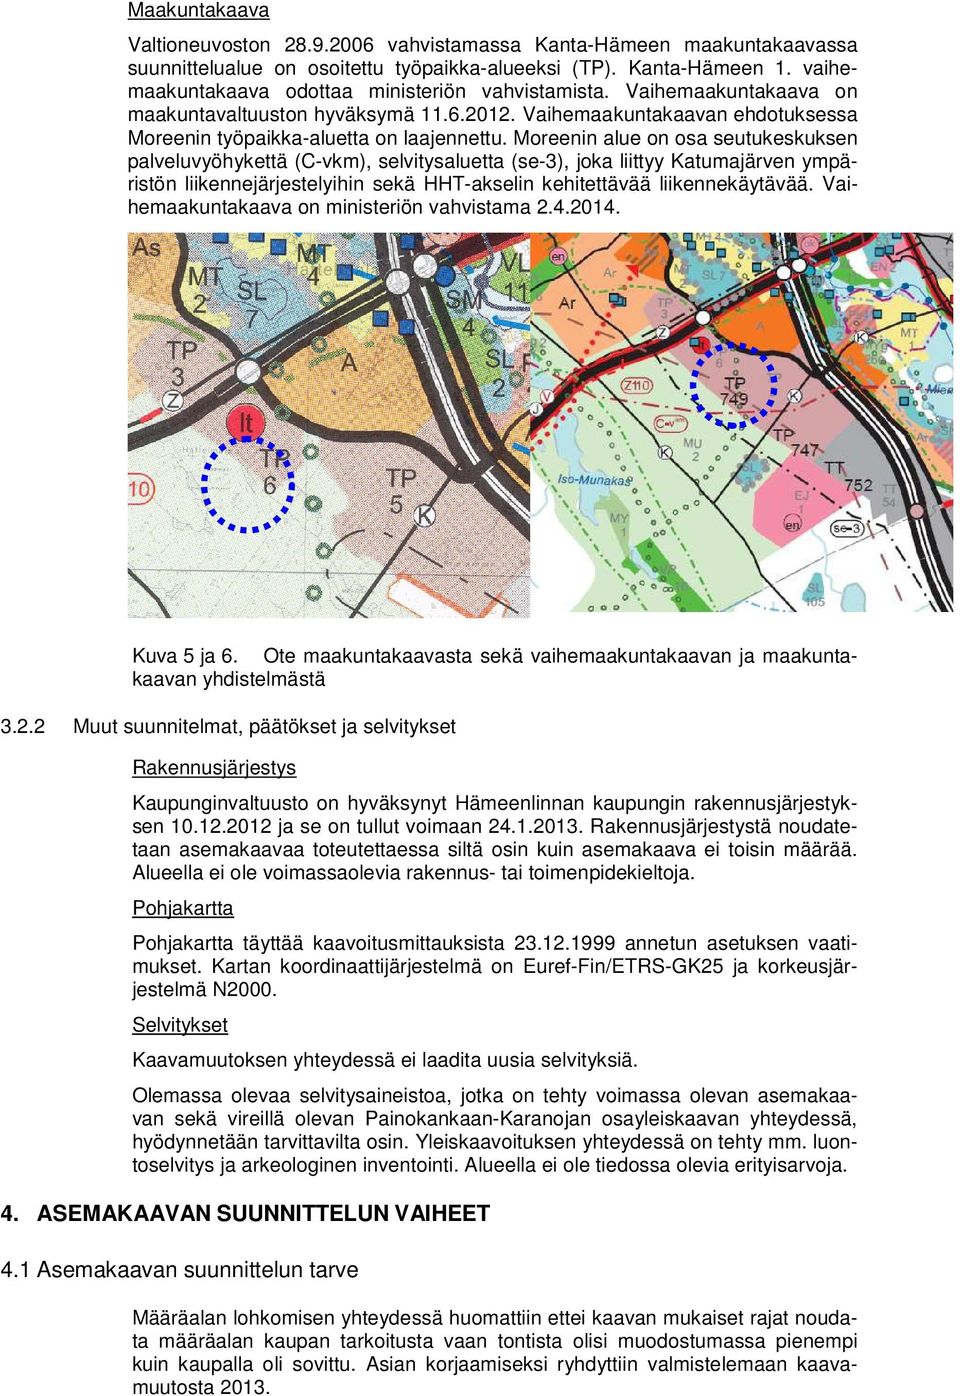 Moreenin alue on osa seutukeskuksen palveluvyöhykettä (C-vkm), selvitysaluetta (se-3), joka liittyy Katumajärven ympäristön liikennejärjestelyihin sekä HHT-akselin kehitettävää liikennekäytävää.